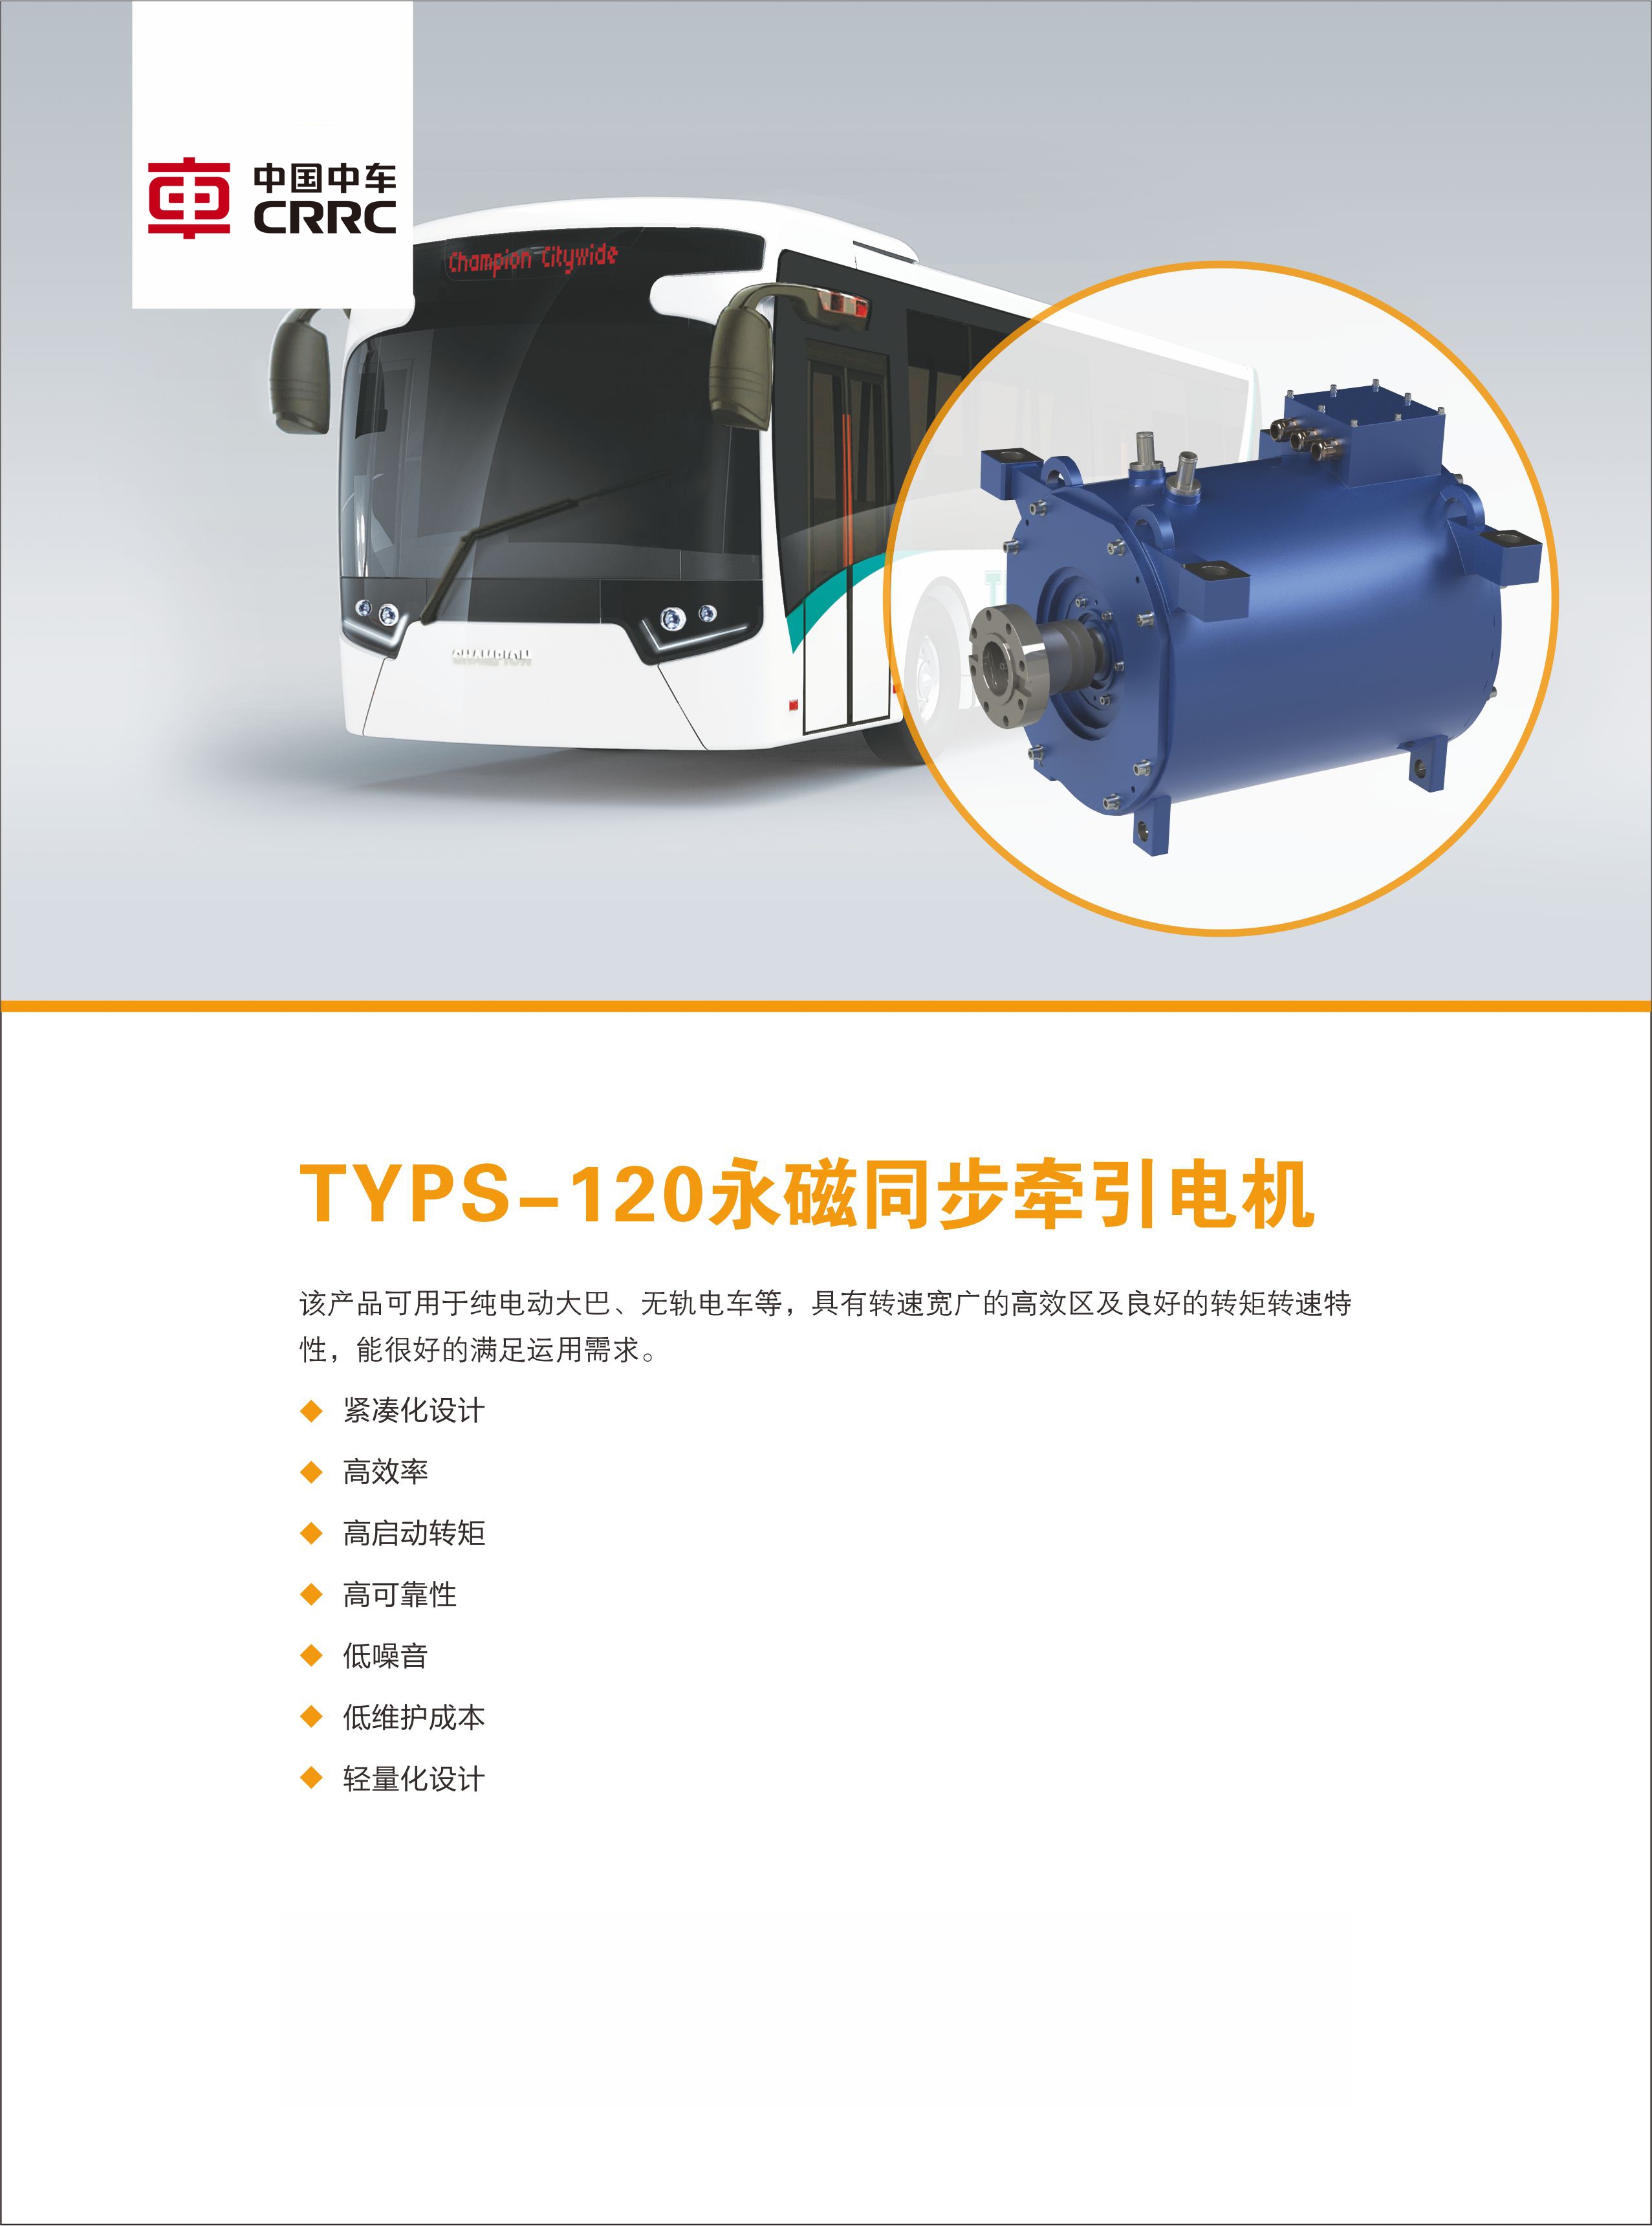 TYPS-120 永磁同步牵引电机